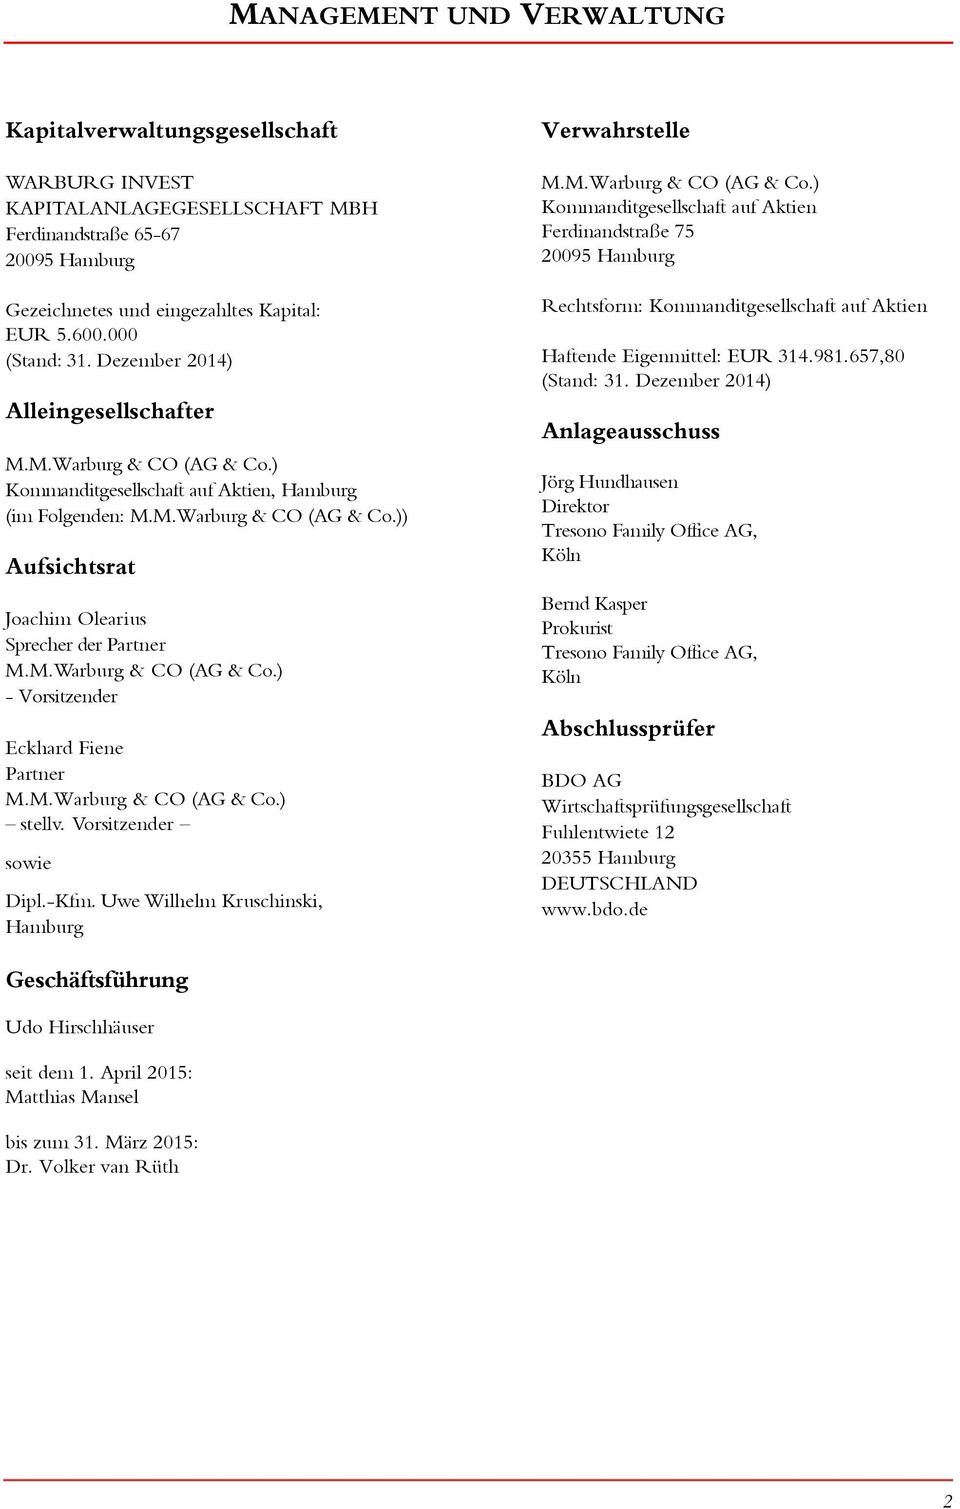 M.Warburg & CO (AG & Co.) - Vorsitzender Eckhard Fiene Partner M.M.Warburg & CO (AG & Co.) stellv. Vorsitzender sowie Dipl.-Kfm. Uwe Wilhelm Kruschinski, Hamburg Verwahrstelle M.M.Warburg & CO (AG & Co.) Kommanditgesellschaft auf Aktien Ferdinandstraße 75 295 Hamburg Rechtsform: Kommanditgesellschaft auf Aktien Haftende Eigenmittel: EUR 314.